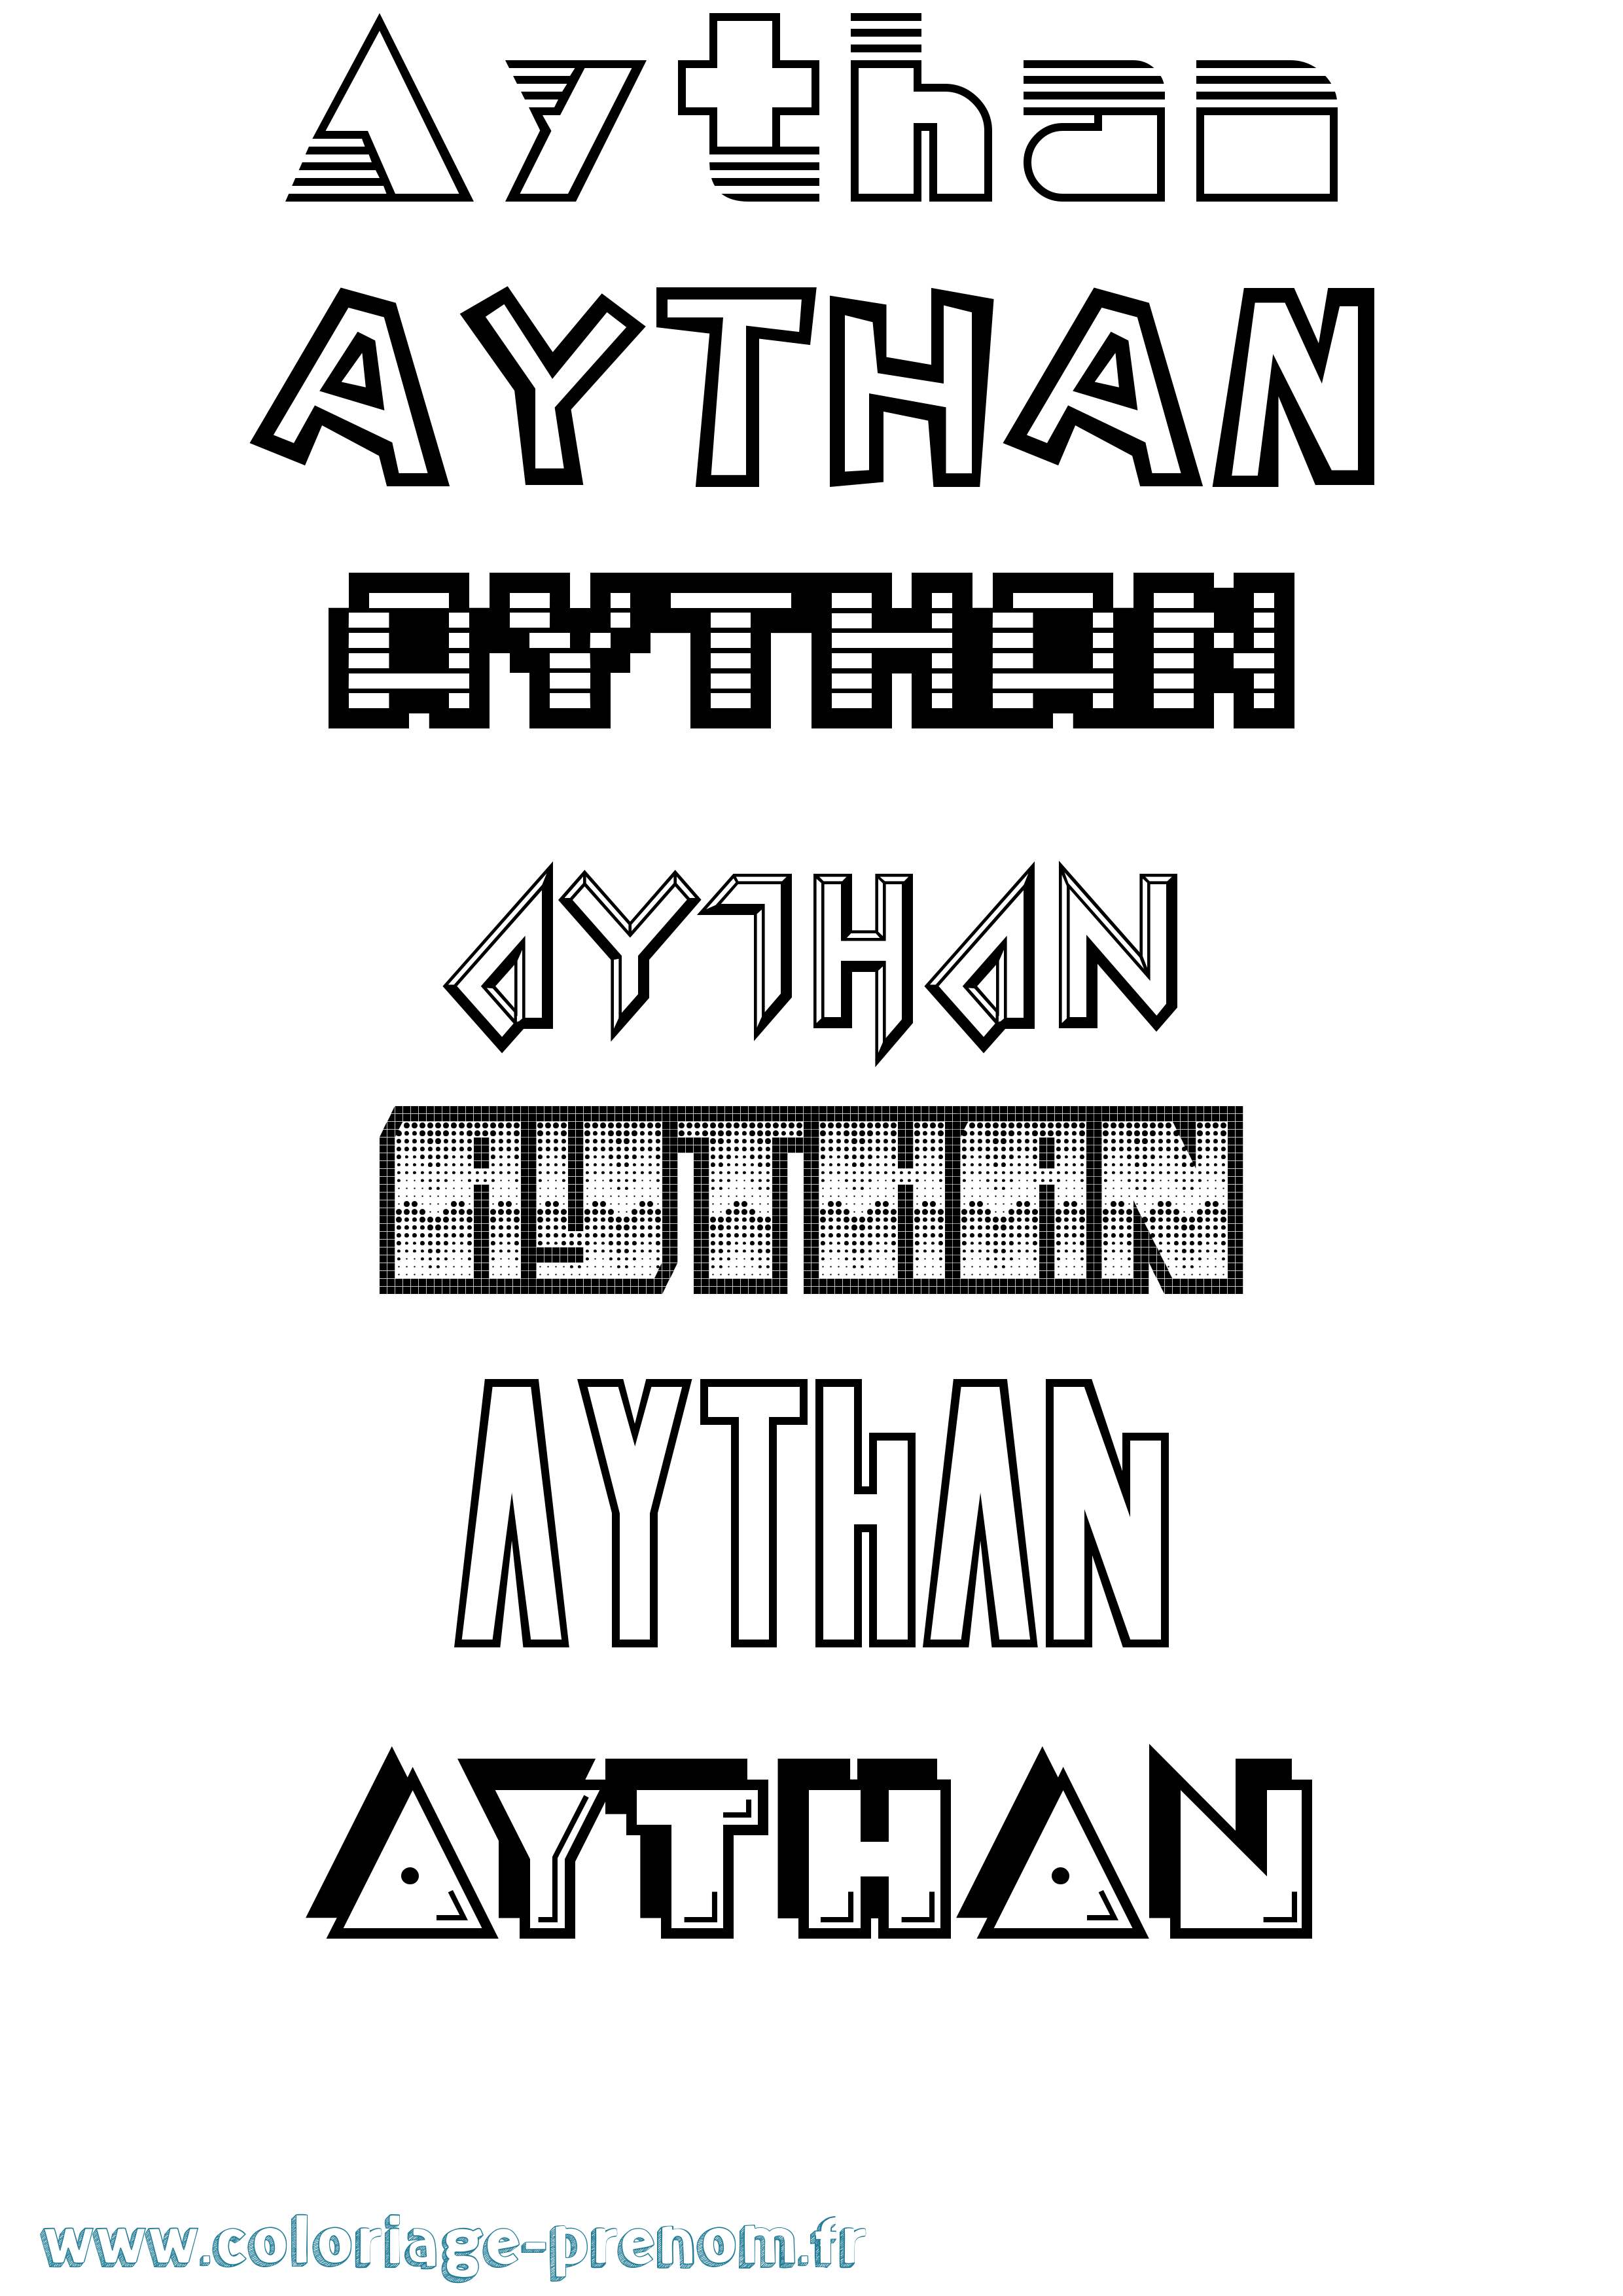 Coloriage prénom Aythan Jeux Vidéos